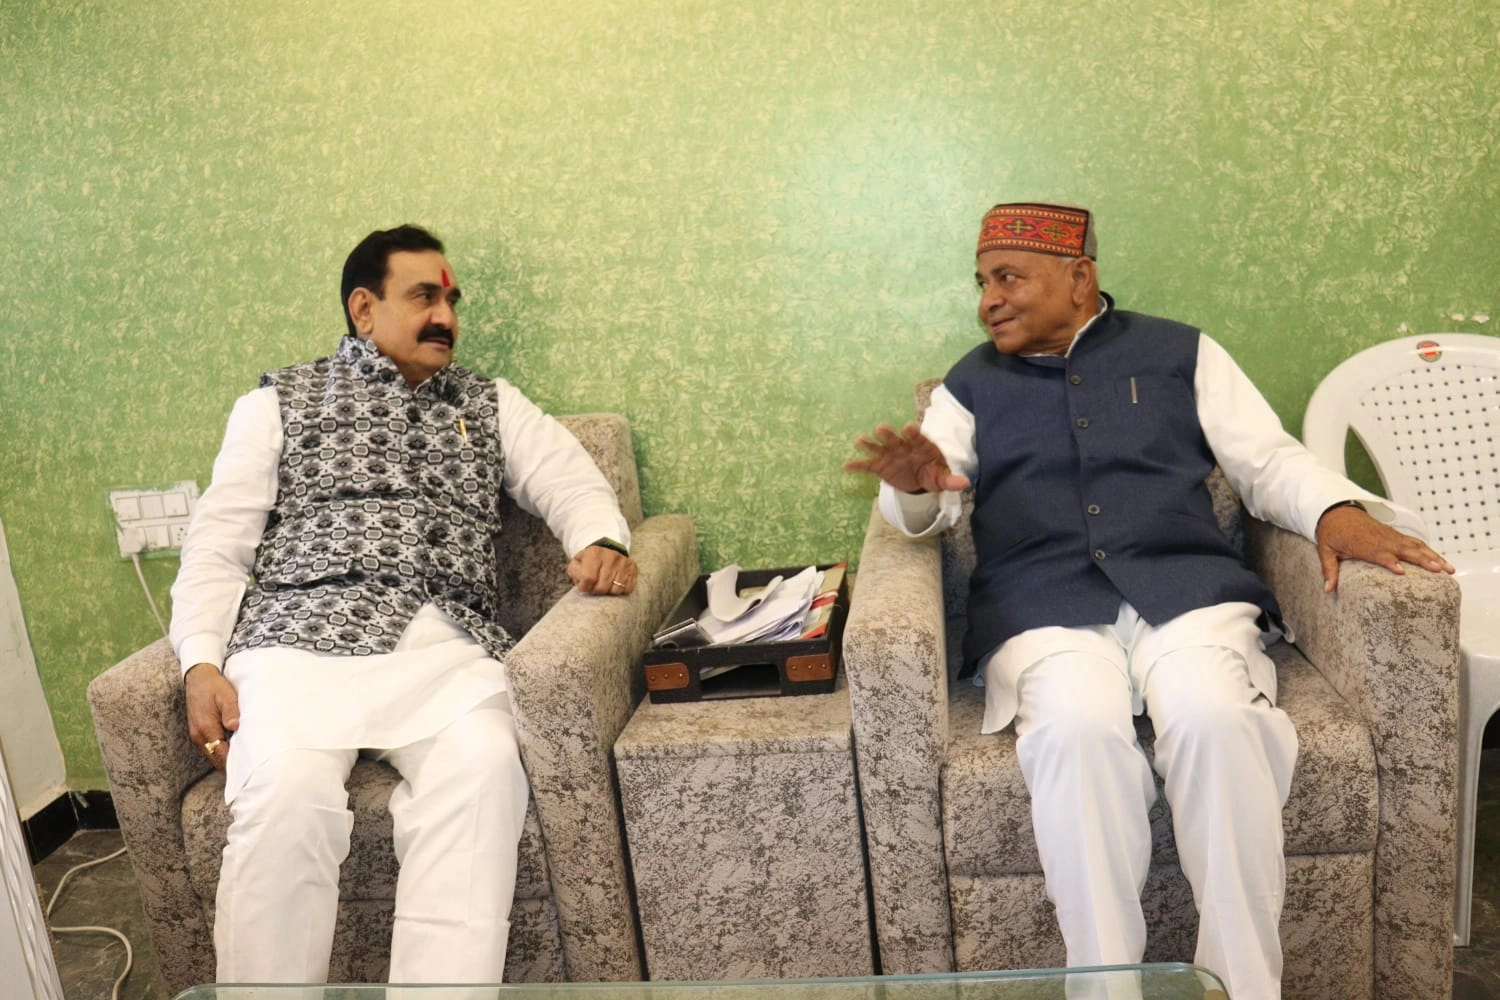 अजब मध्यप्रदेश की गजब सियासत! भाजपा नेताओं की अश्लील सीडी का दावा करने वाले डॉ. गोविंद सिंह ने गृहमंत्री नरोत्तम मिश्रा से की मुलाकात - Dr. Govind Singh, who claimed obscene CDs of BJP leaders met Home Minister Narottam Mishra